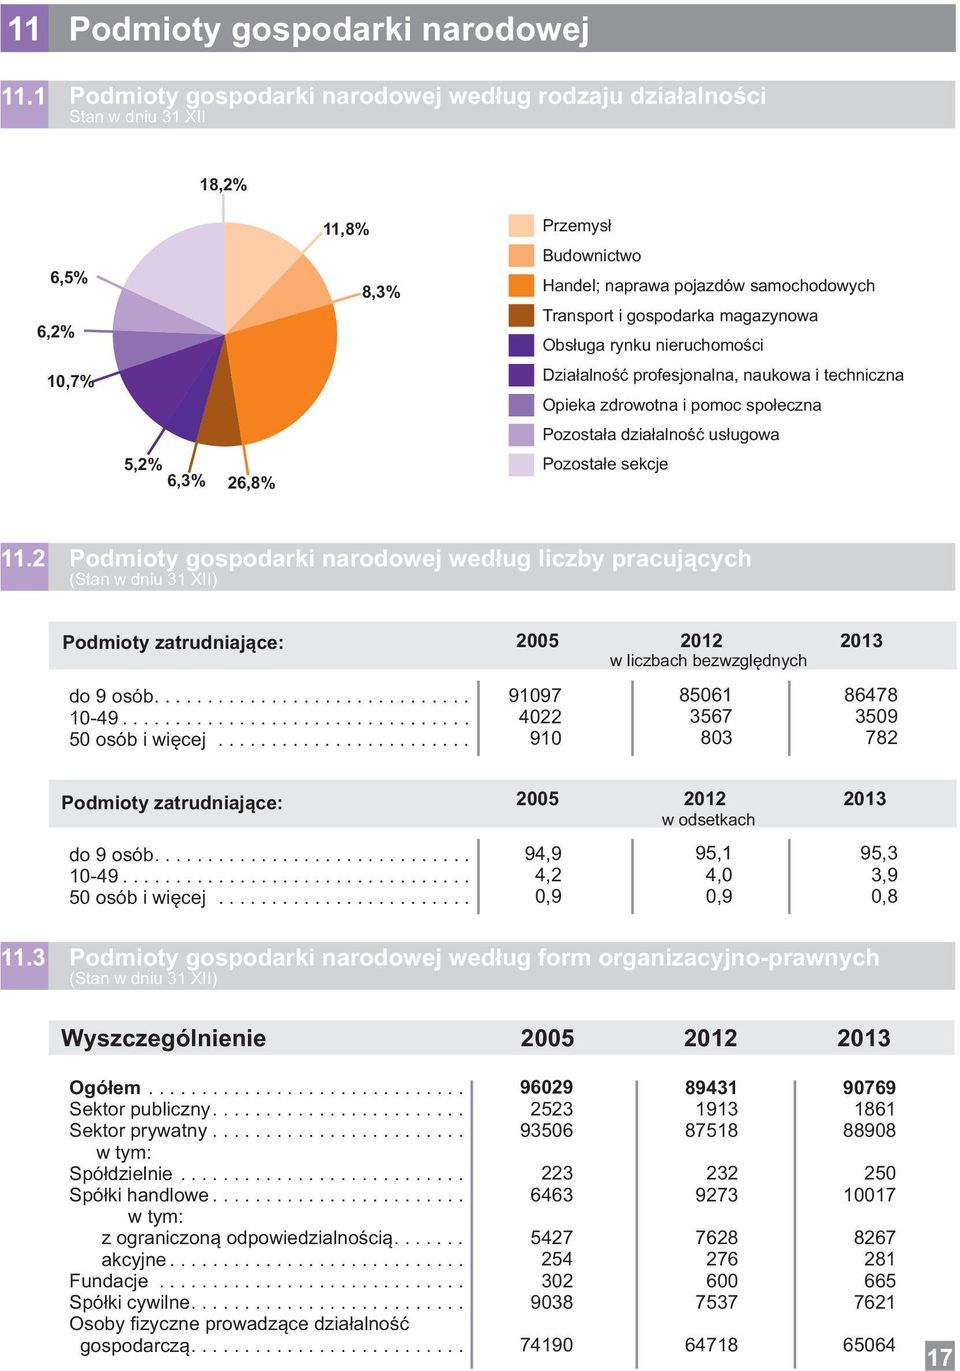 profesjonln, nukow i techniczn Opiek zdrowotn i pomoc społeczn Pozostł dziłlność usługow Pozostłe sekcje 6,5% 6,% 8,3%,7% 5,% 6,3% 6,8%.